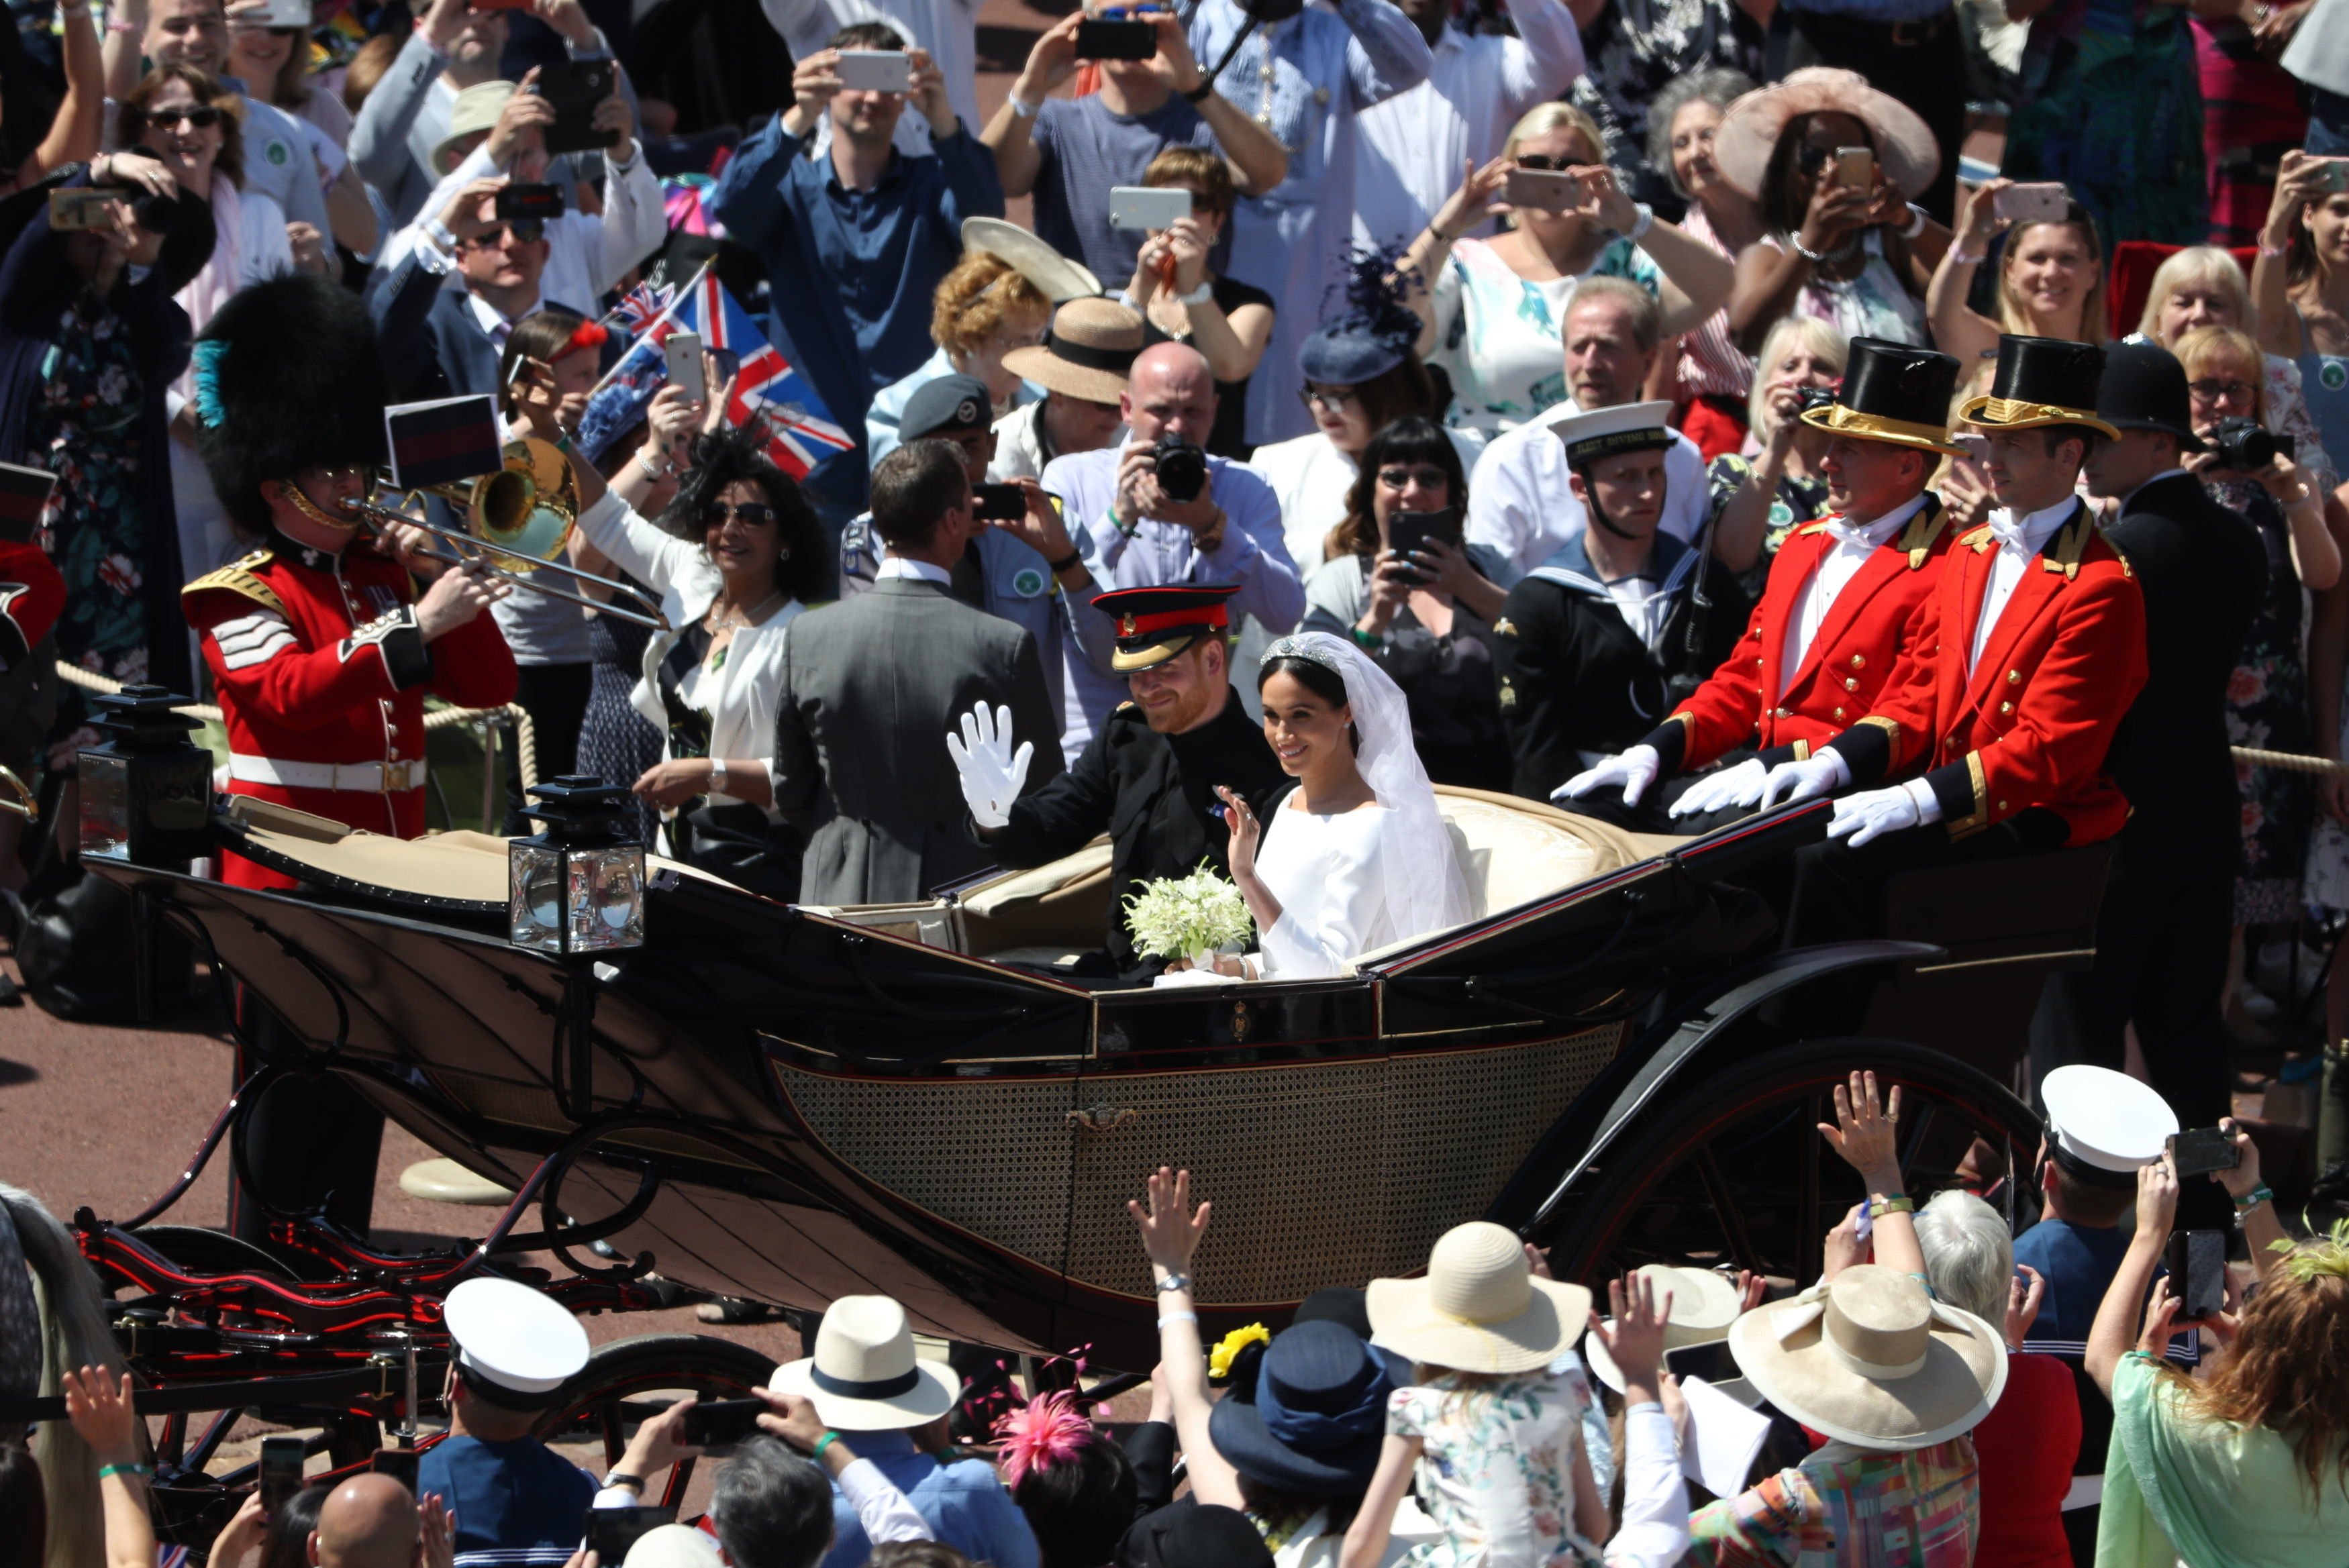 Las multitudes animan a los recién casados, el príncipe Harry y Meghan Markle en el carruaje de Ascot Landau el 19 de mayo de 2018 en Windsor, Inglaterra. | Foto: Getty Images